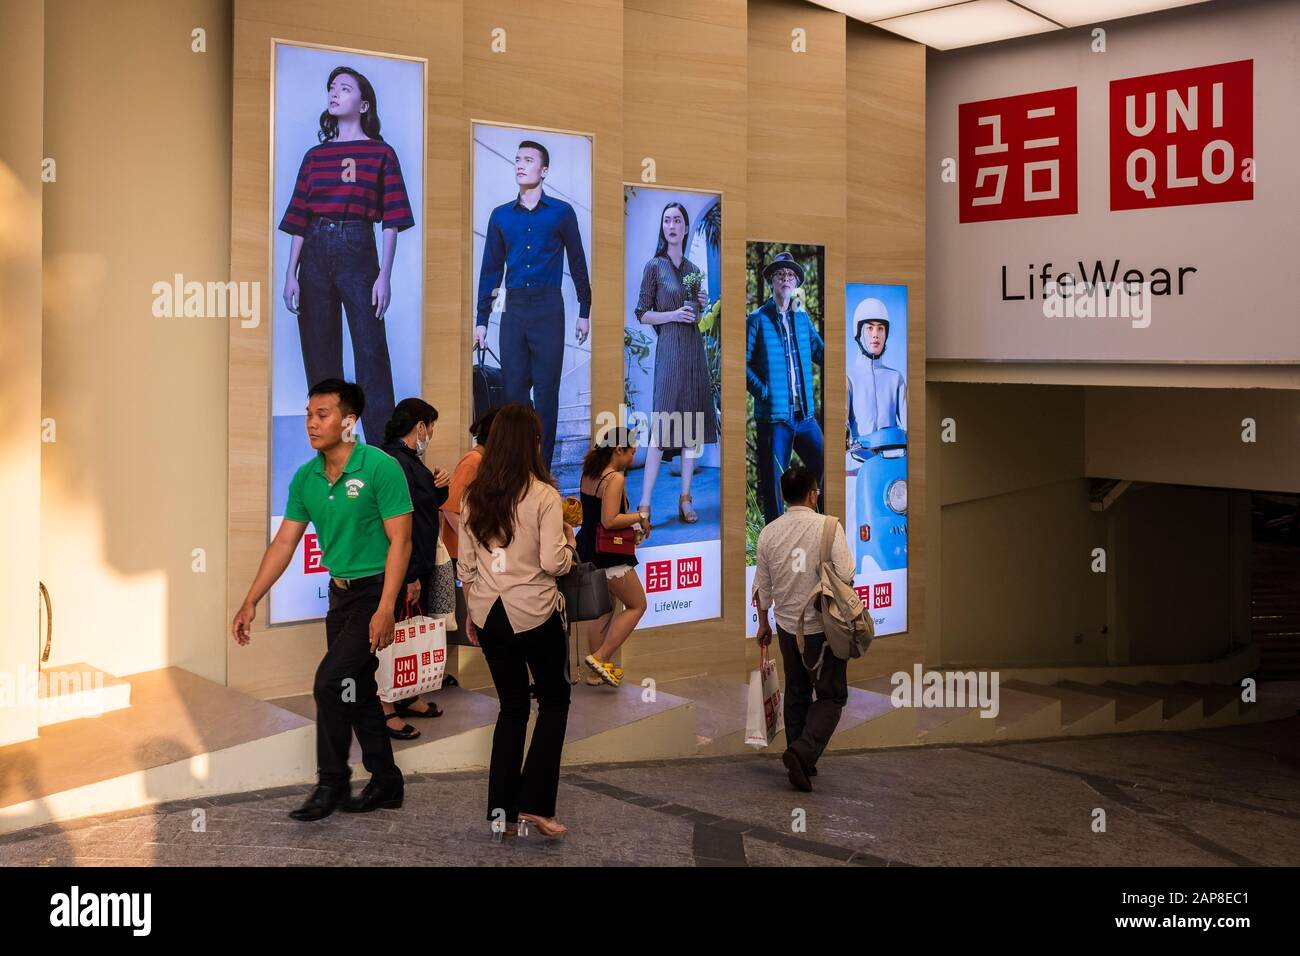 Nhân đôi trải nghiệm mua sắm chất lượng Nhật Bản với cửa hàng mới của UNIQLO  tại AEON MALL Long Biên  AEONMALL Vietnam